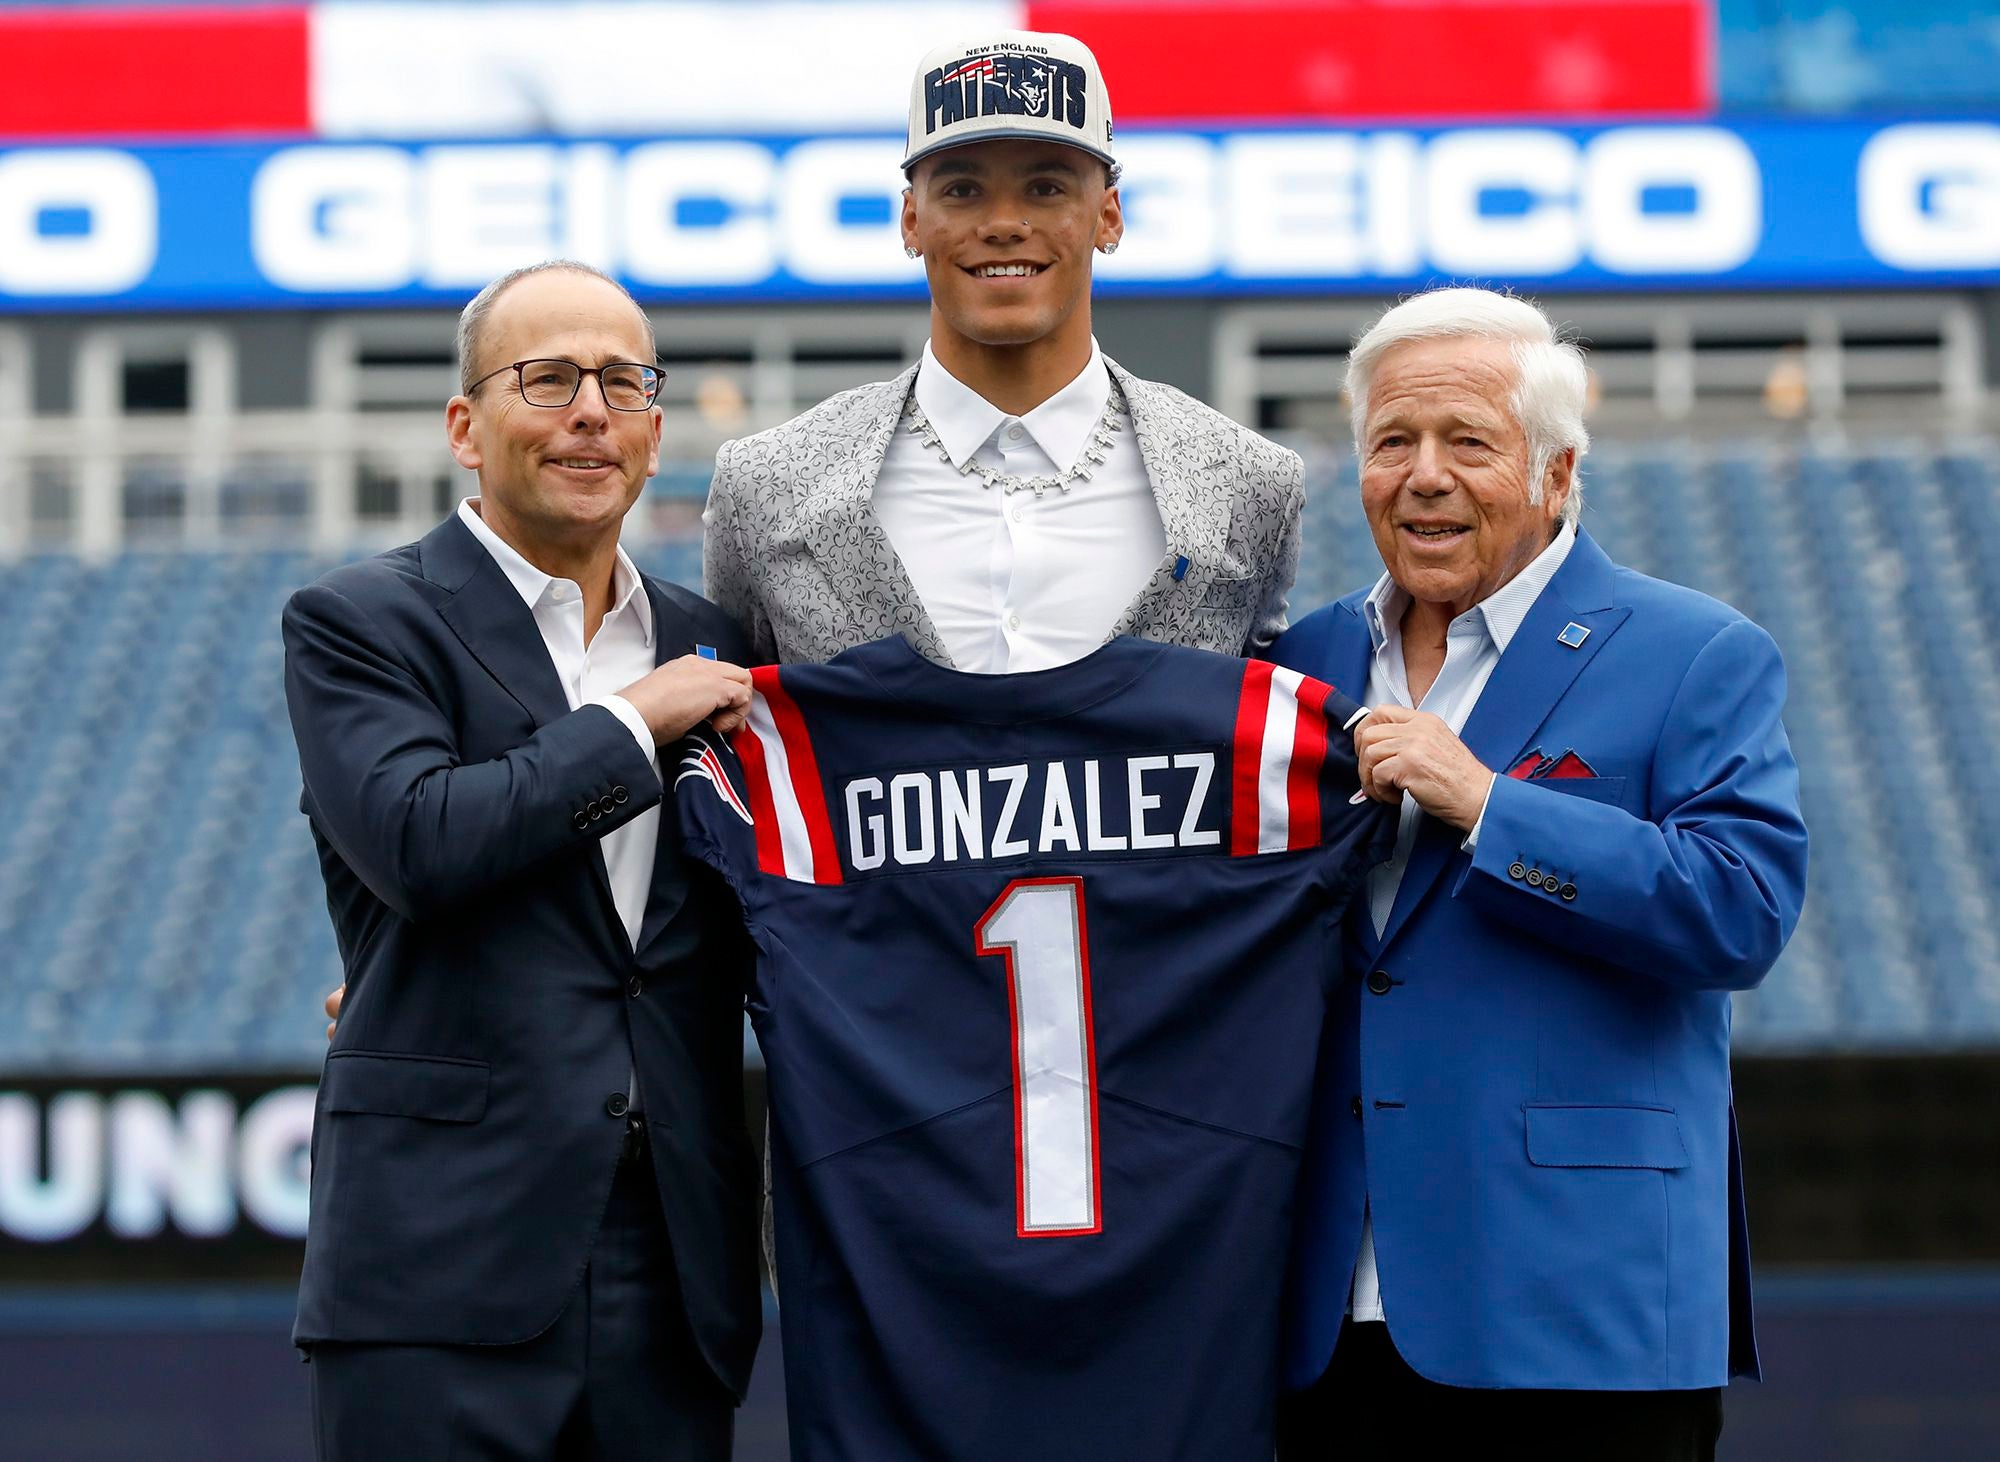 Christian Gonzalez holding up a Patriots jersey next to the Krafts.